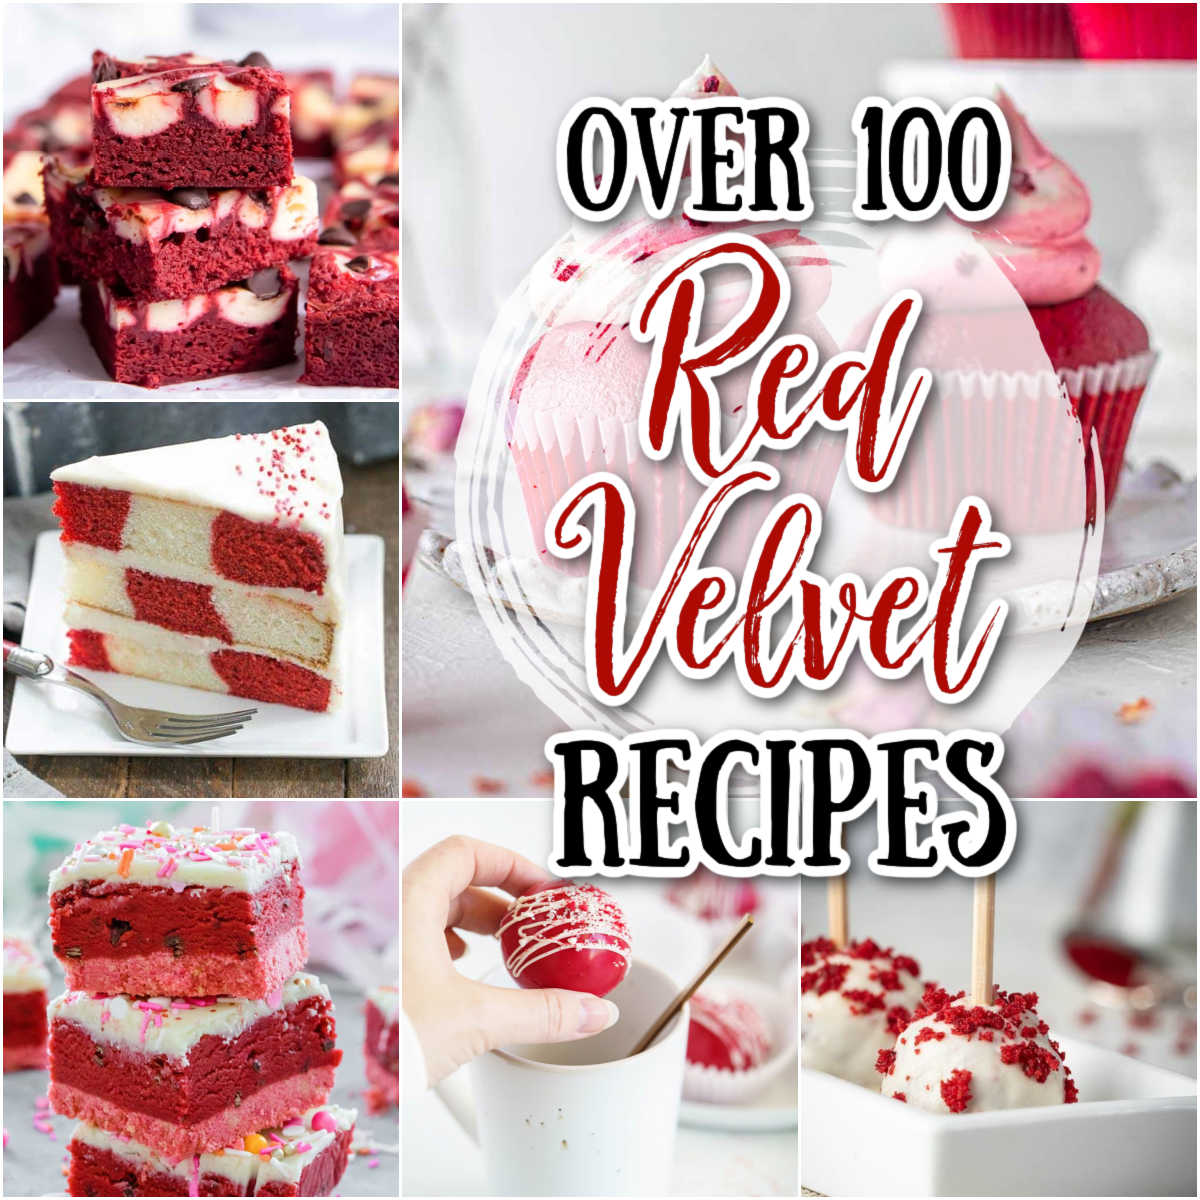 Easy Vegan Red Velvet Cake